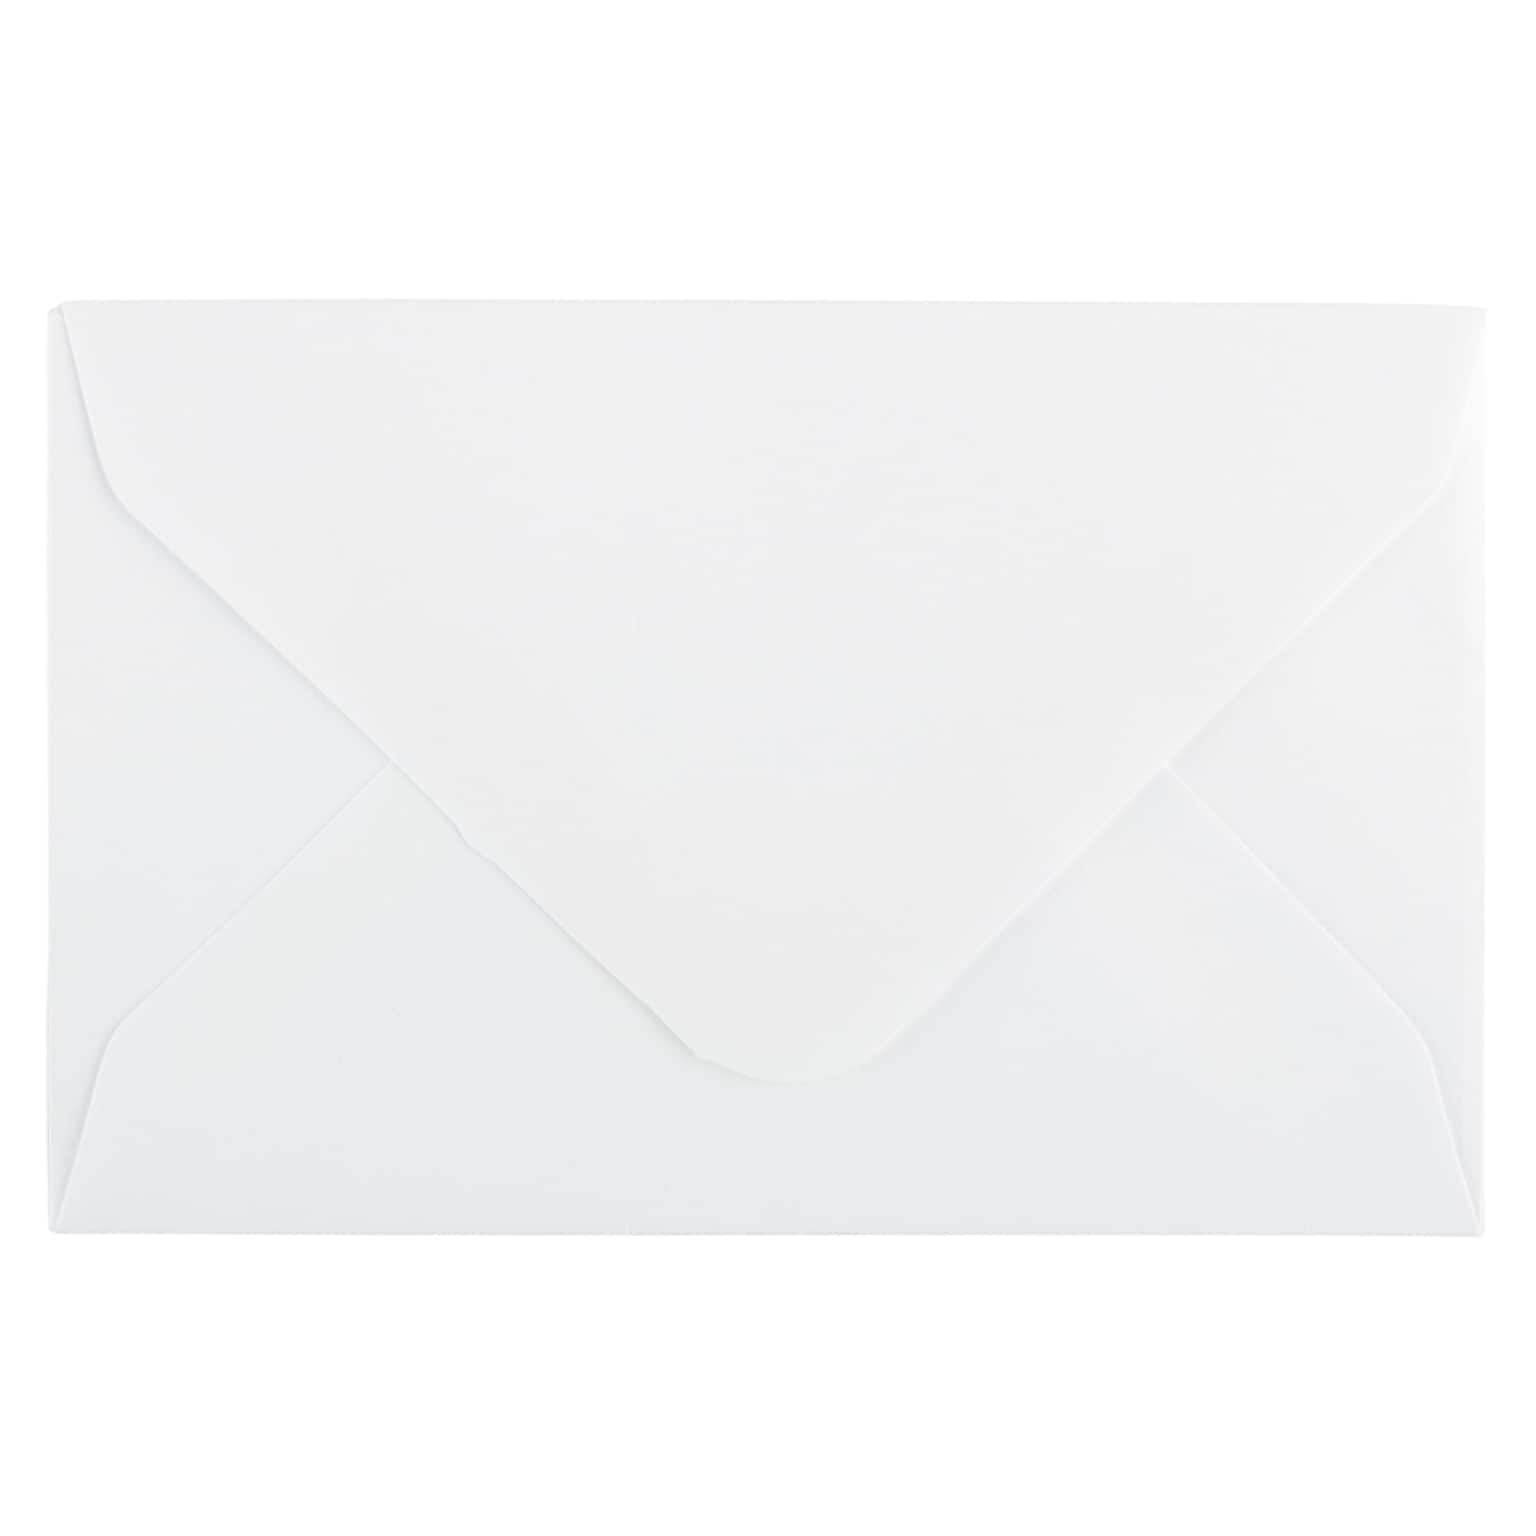 JAM Paper Mini Commercial Envelopes, 2.75 x 3.75, White, 25/Pack (201246)